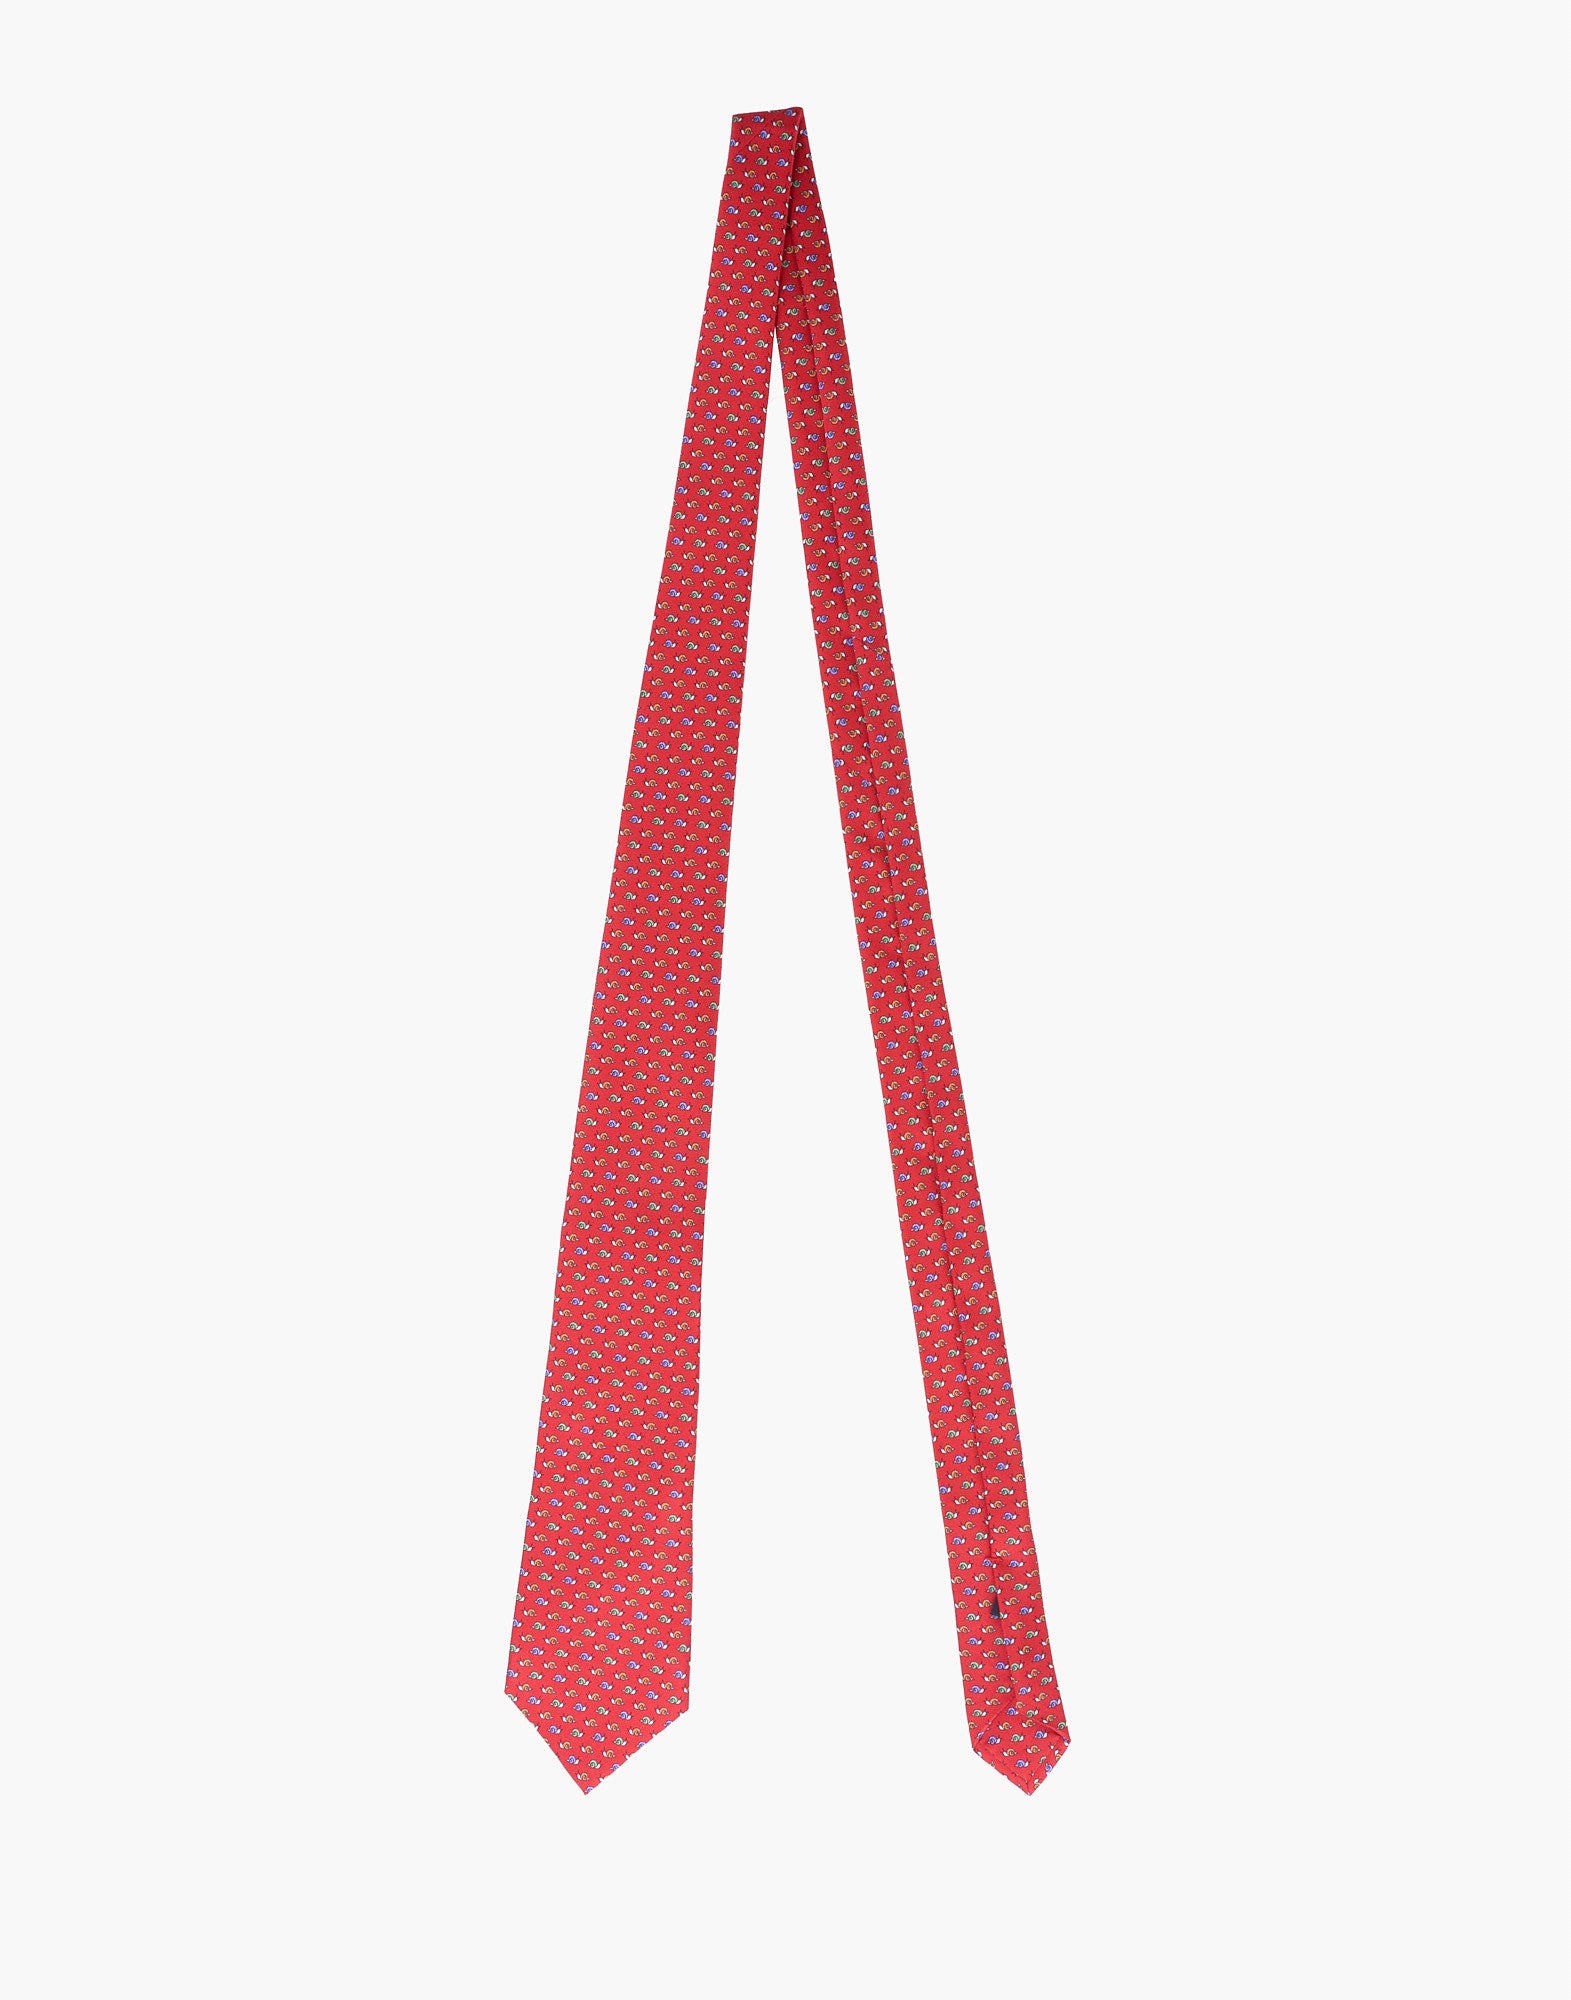 Cravatta PETRONIUS Fantasia
Rosso